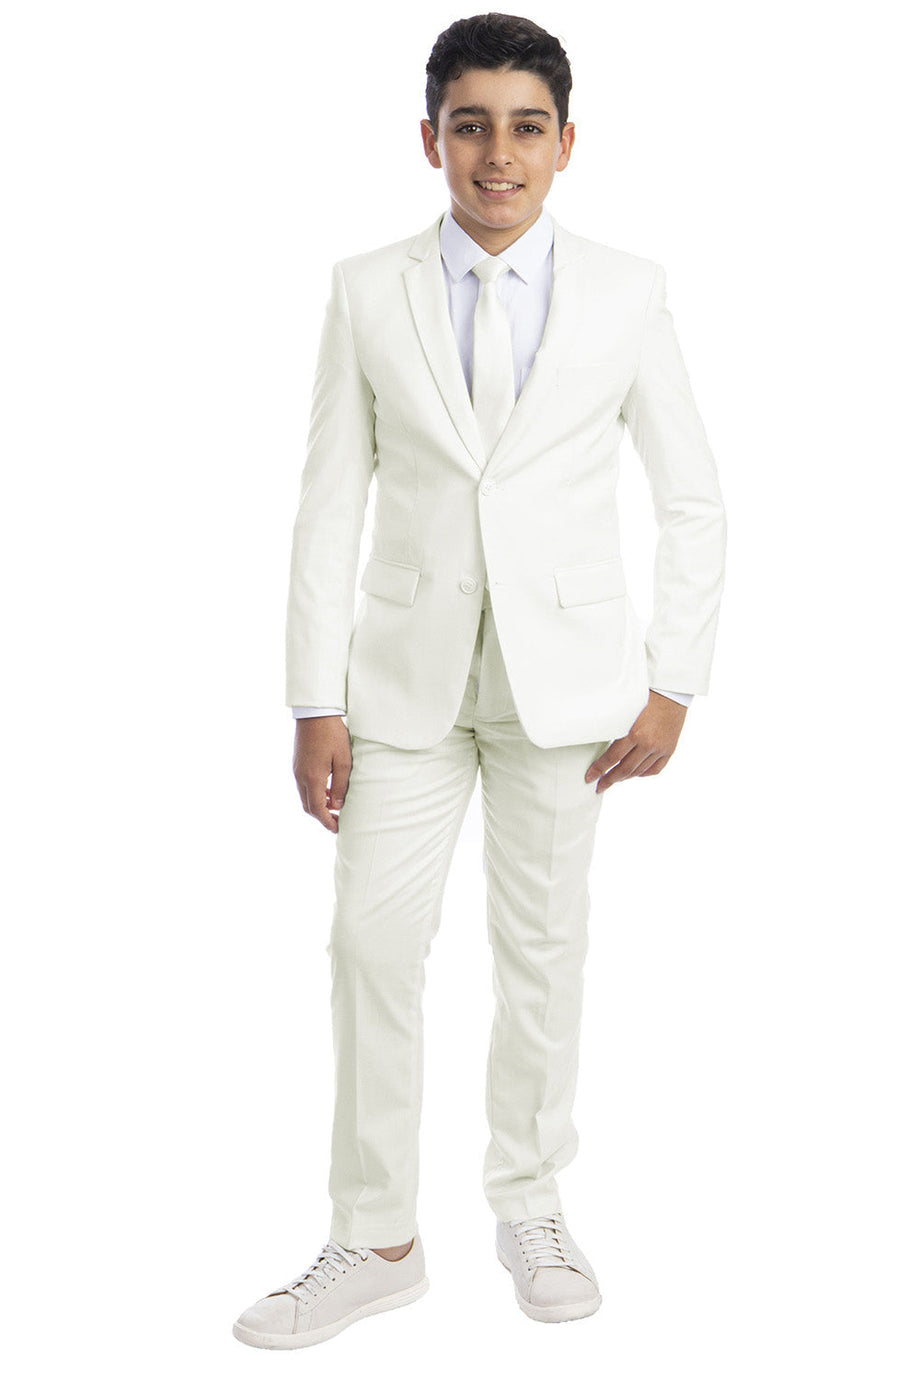 Perry Ellis "Noah" Perry Ellis Kids Off-White 5-Piece Suit